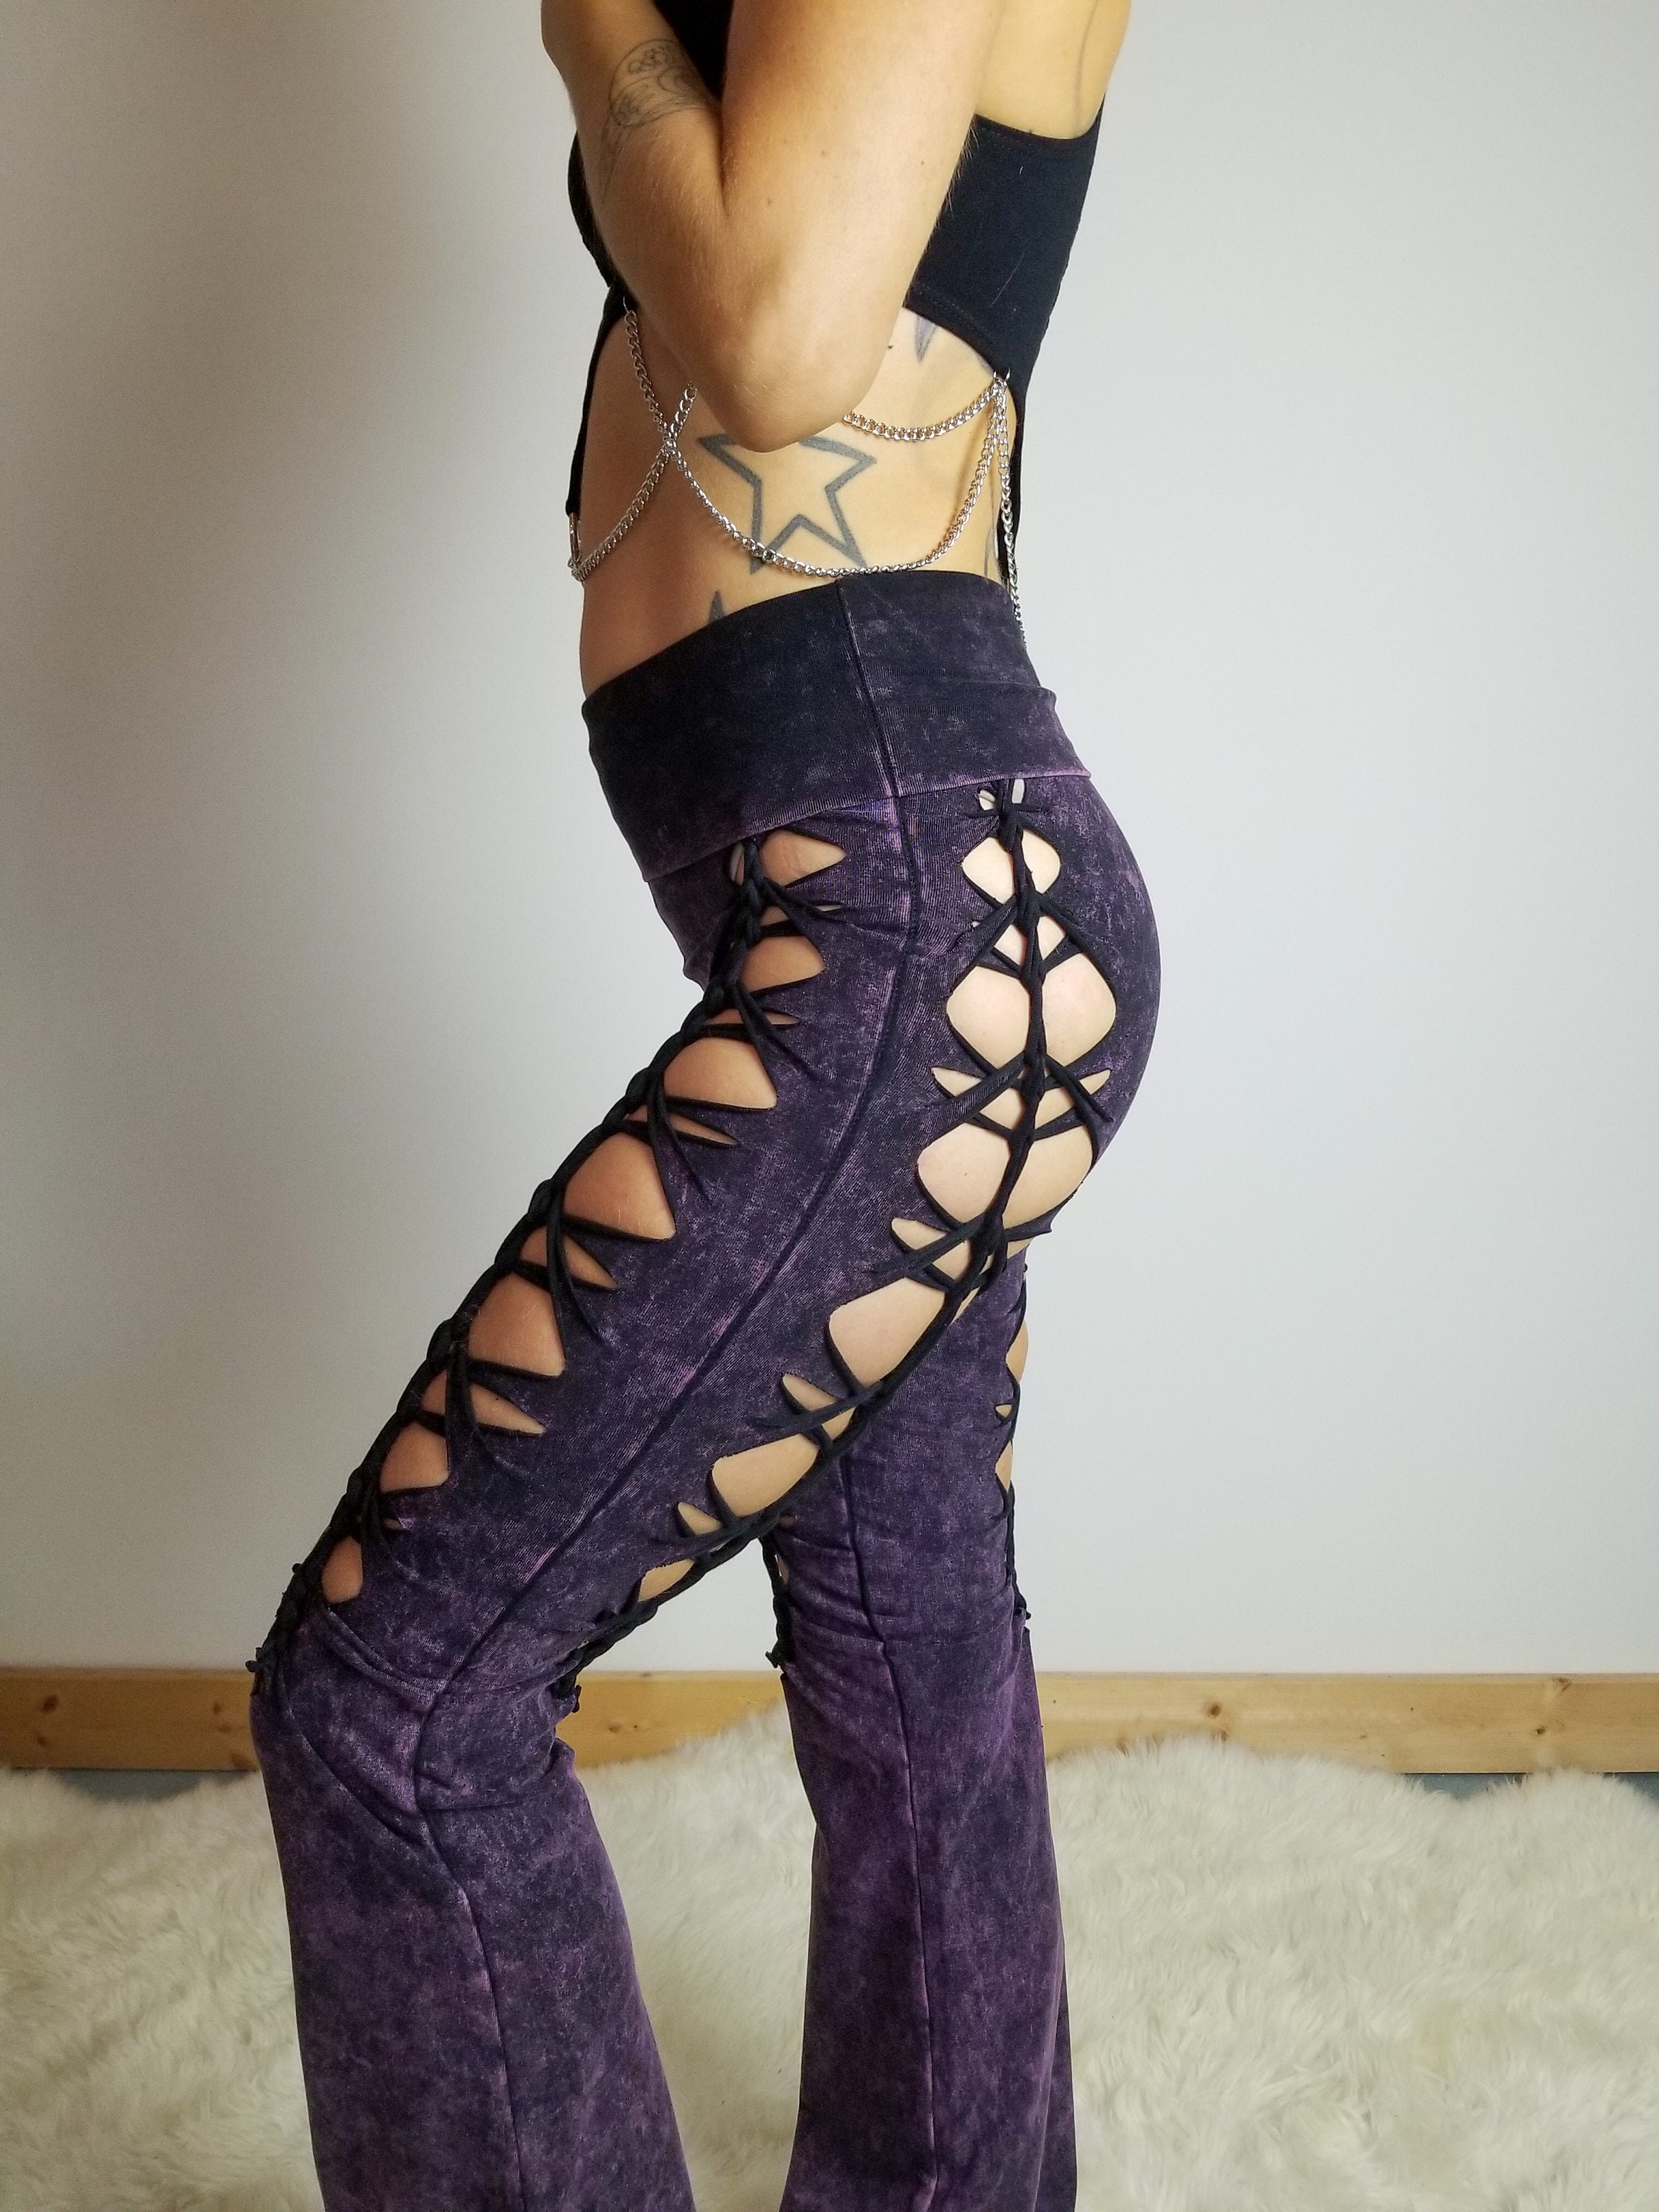 RINGO-Mineral Washed Fold Over Yoga Pant  Fold over yoga pants, Yoga pants,  Clothes design